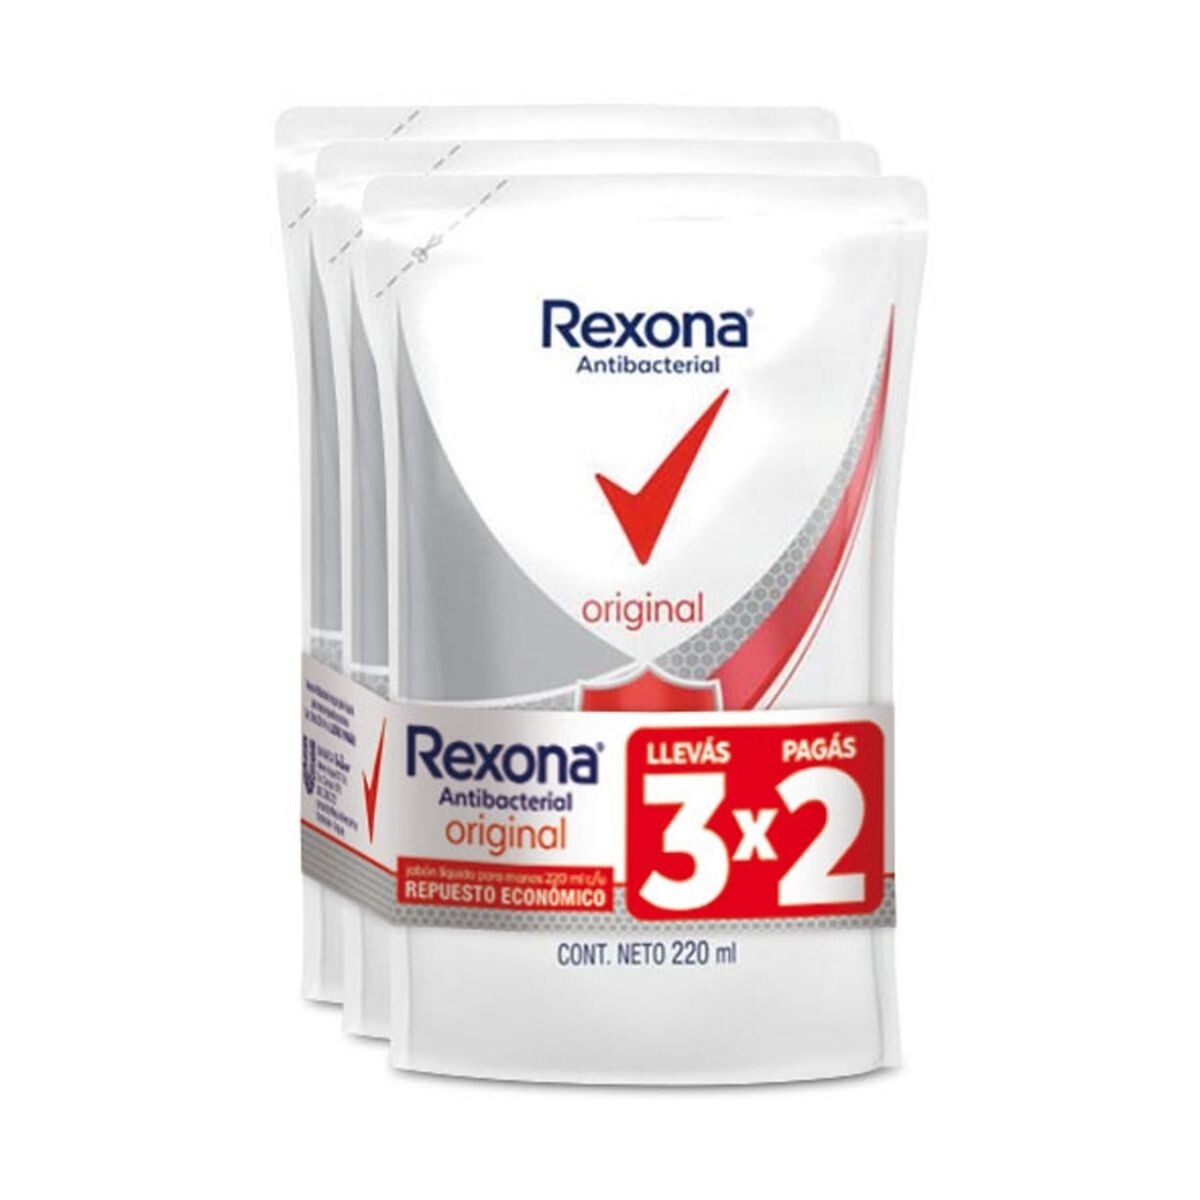 Jabón Líquido Rexona Antibacterial 220 ML Pack Ahorro Llevá 3 y Pagá 2 